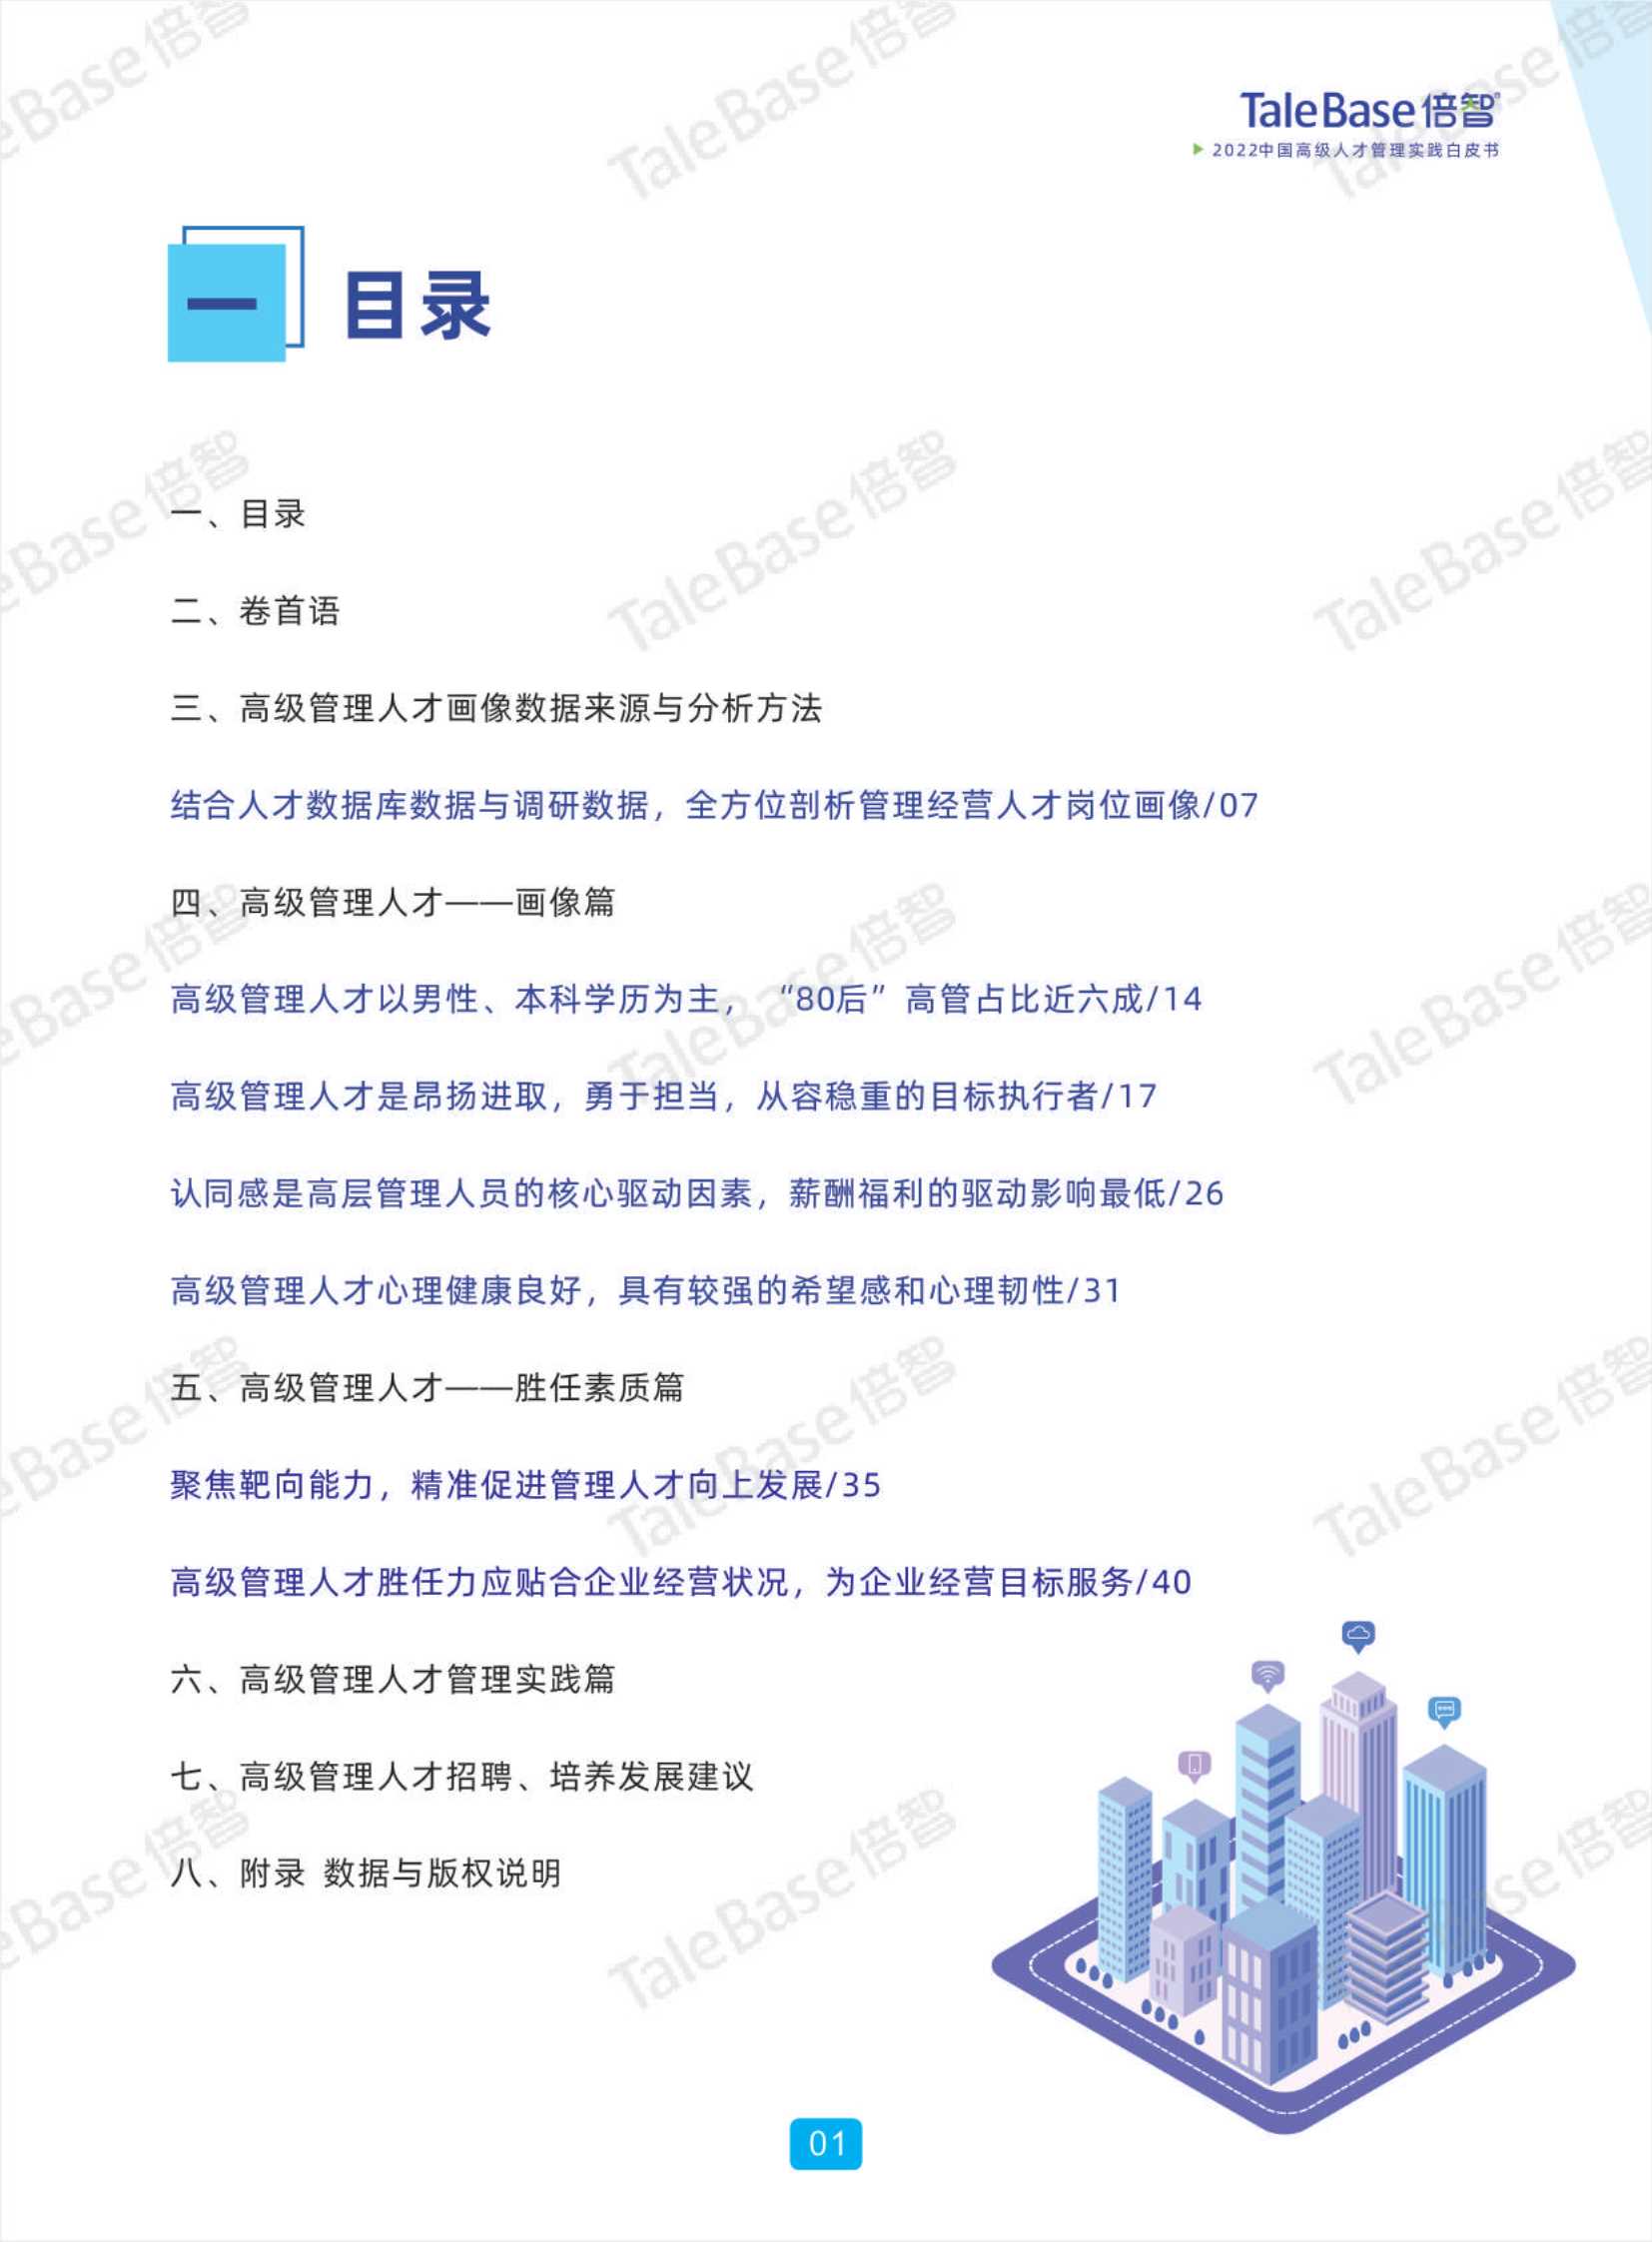 2022中国高级人才管理实践白皮书-2022.04-49页